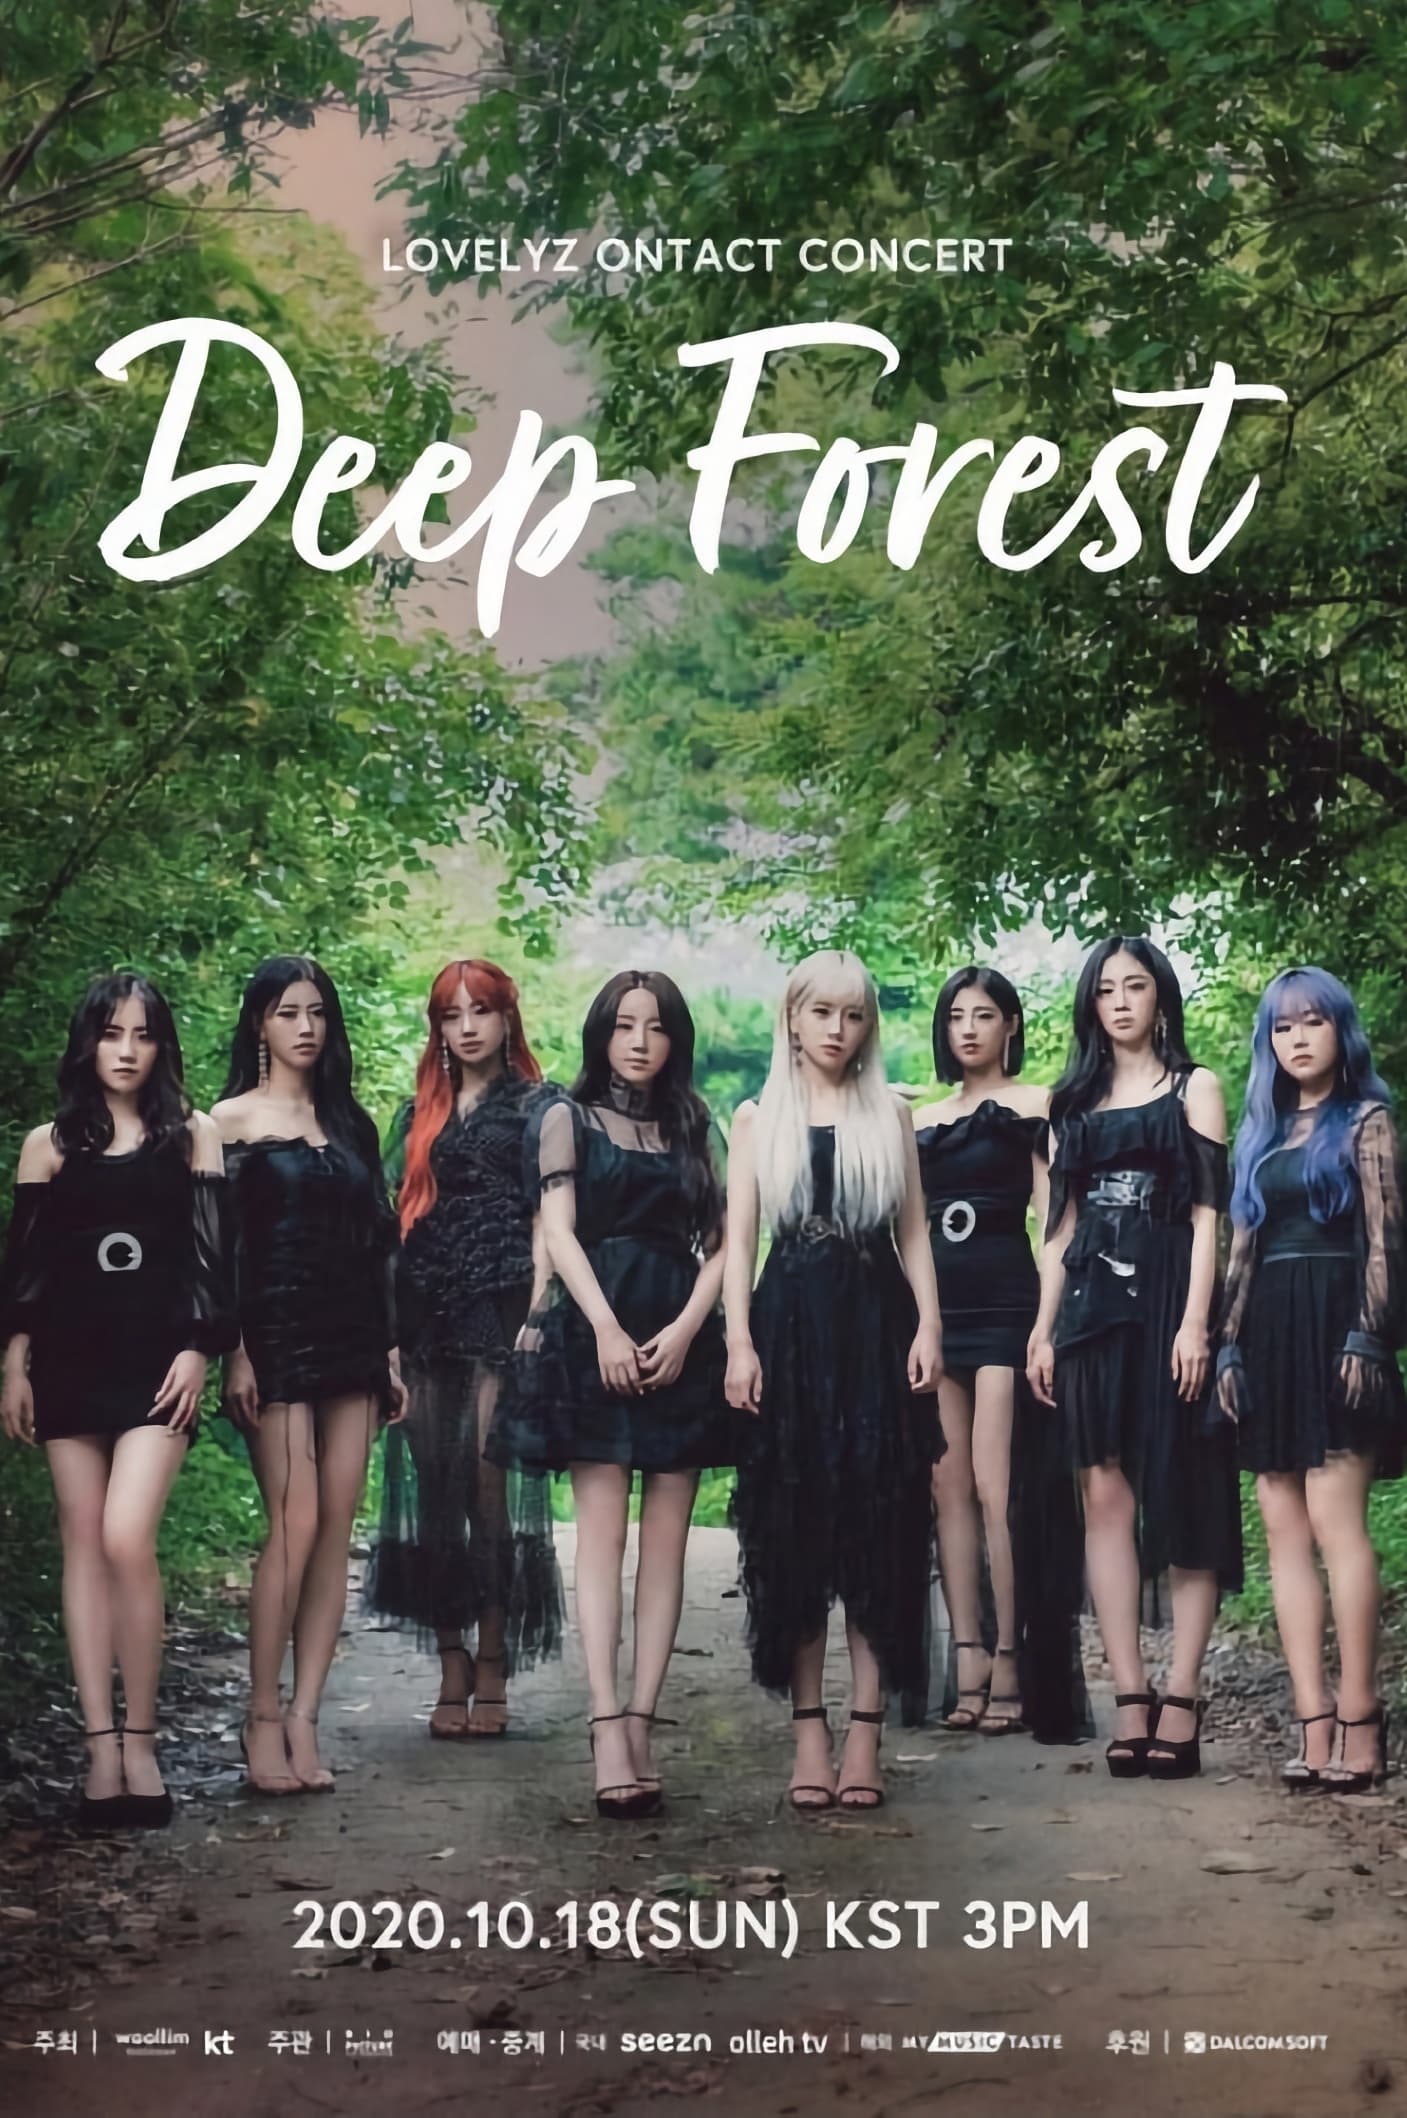 LOVELYZ ONTACT Concert "Deep Forest"